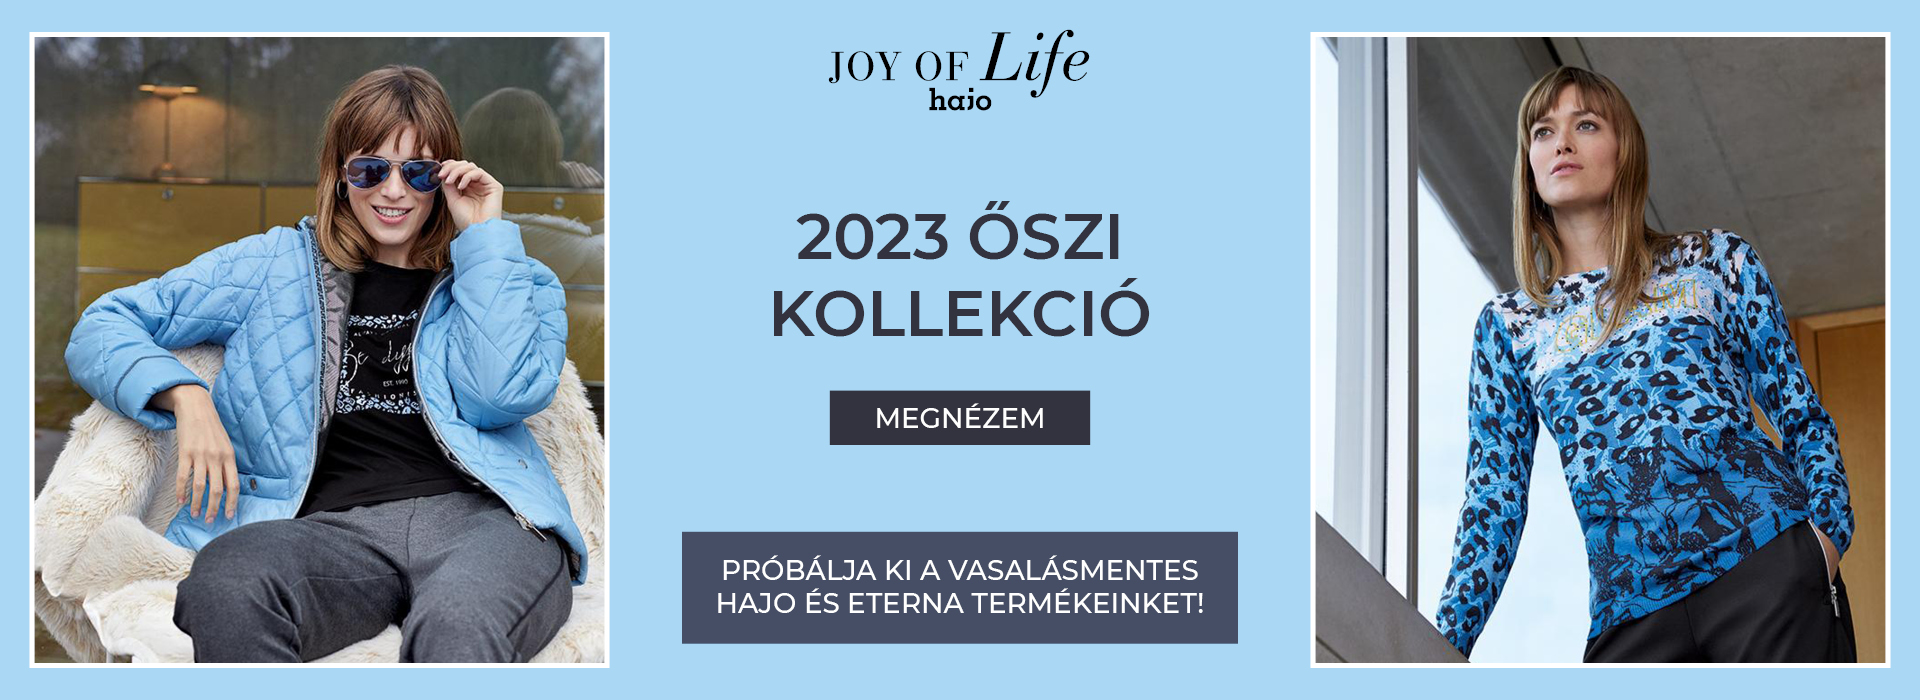 2023 ősz /  Joy of Life